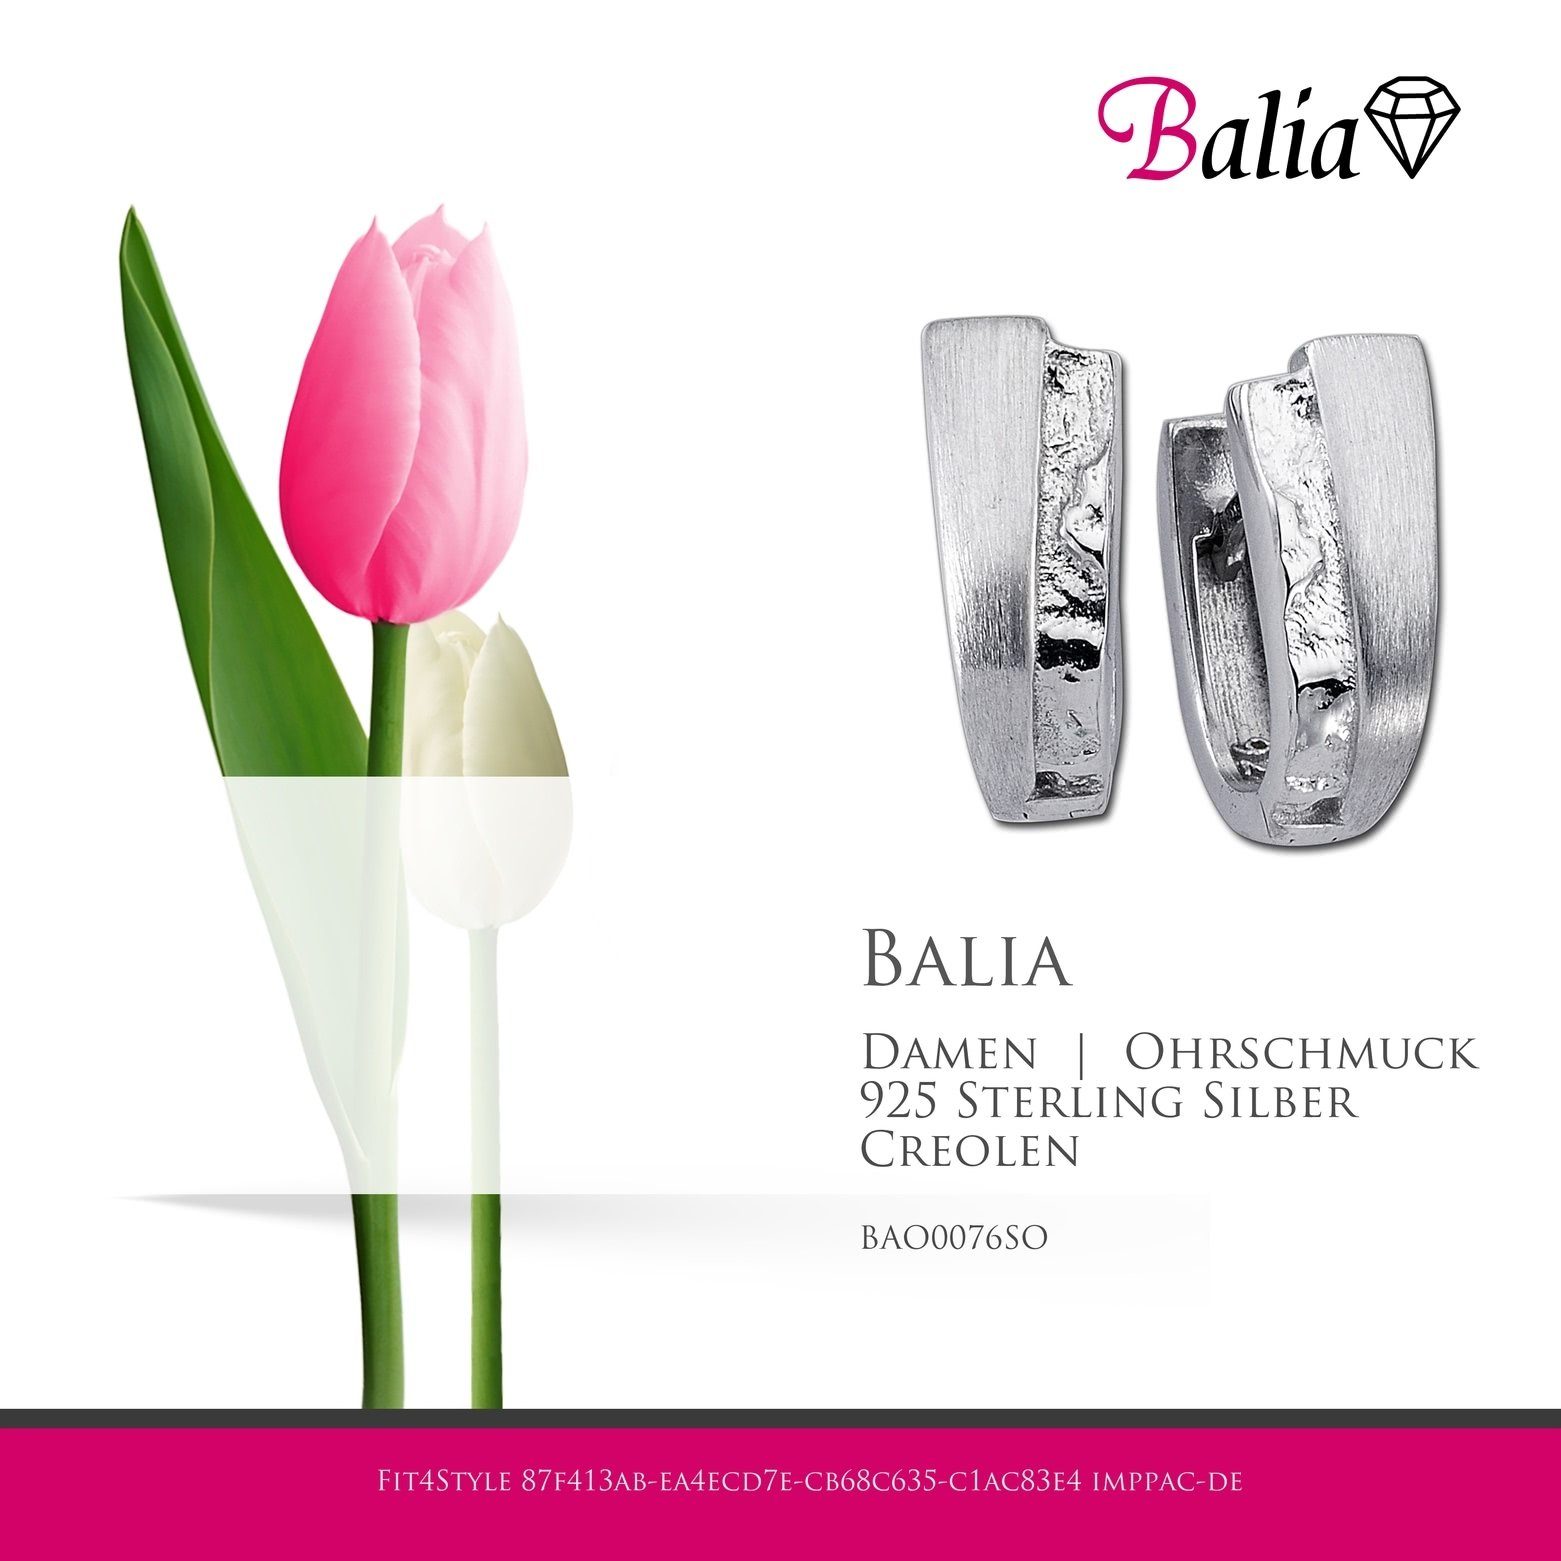 Dreieck Silber aus Damen Creolen Creolen Paar Silber, Balia Balia Creolen weiß,silber 925 für Damen (Creolen), Farbe: glänzend Sterling